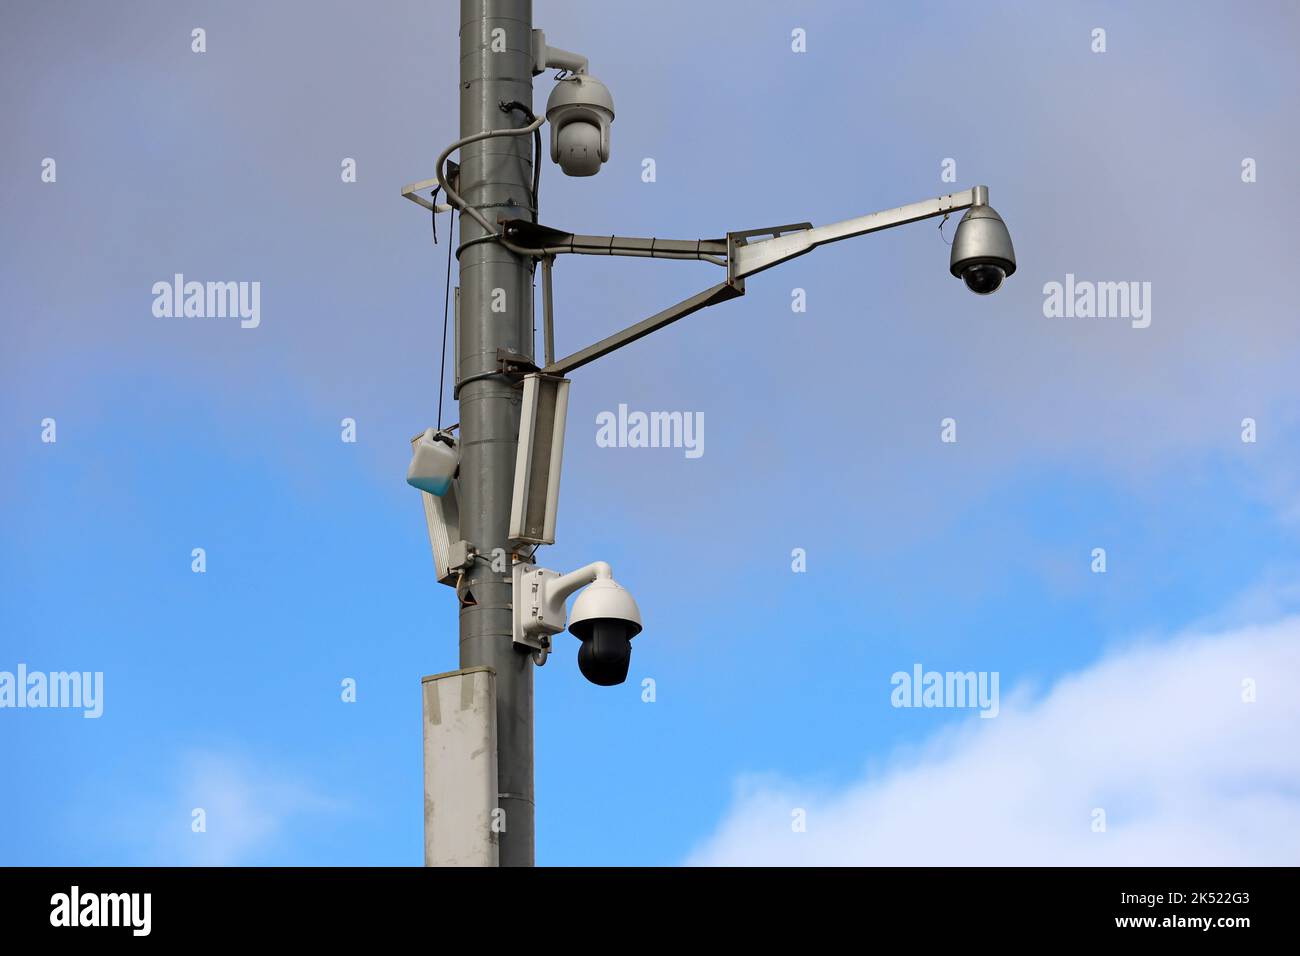 Videocamere di sorveglianza all'aperto su un palo da strada nel cielo blu. Telecamera TVCC, concetto di sicurezza, privacy e protezione dal crimine Foto Stock